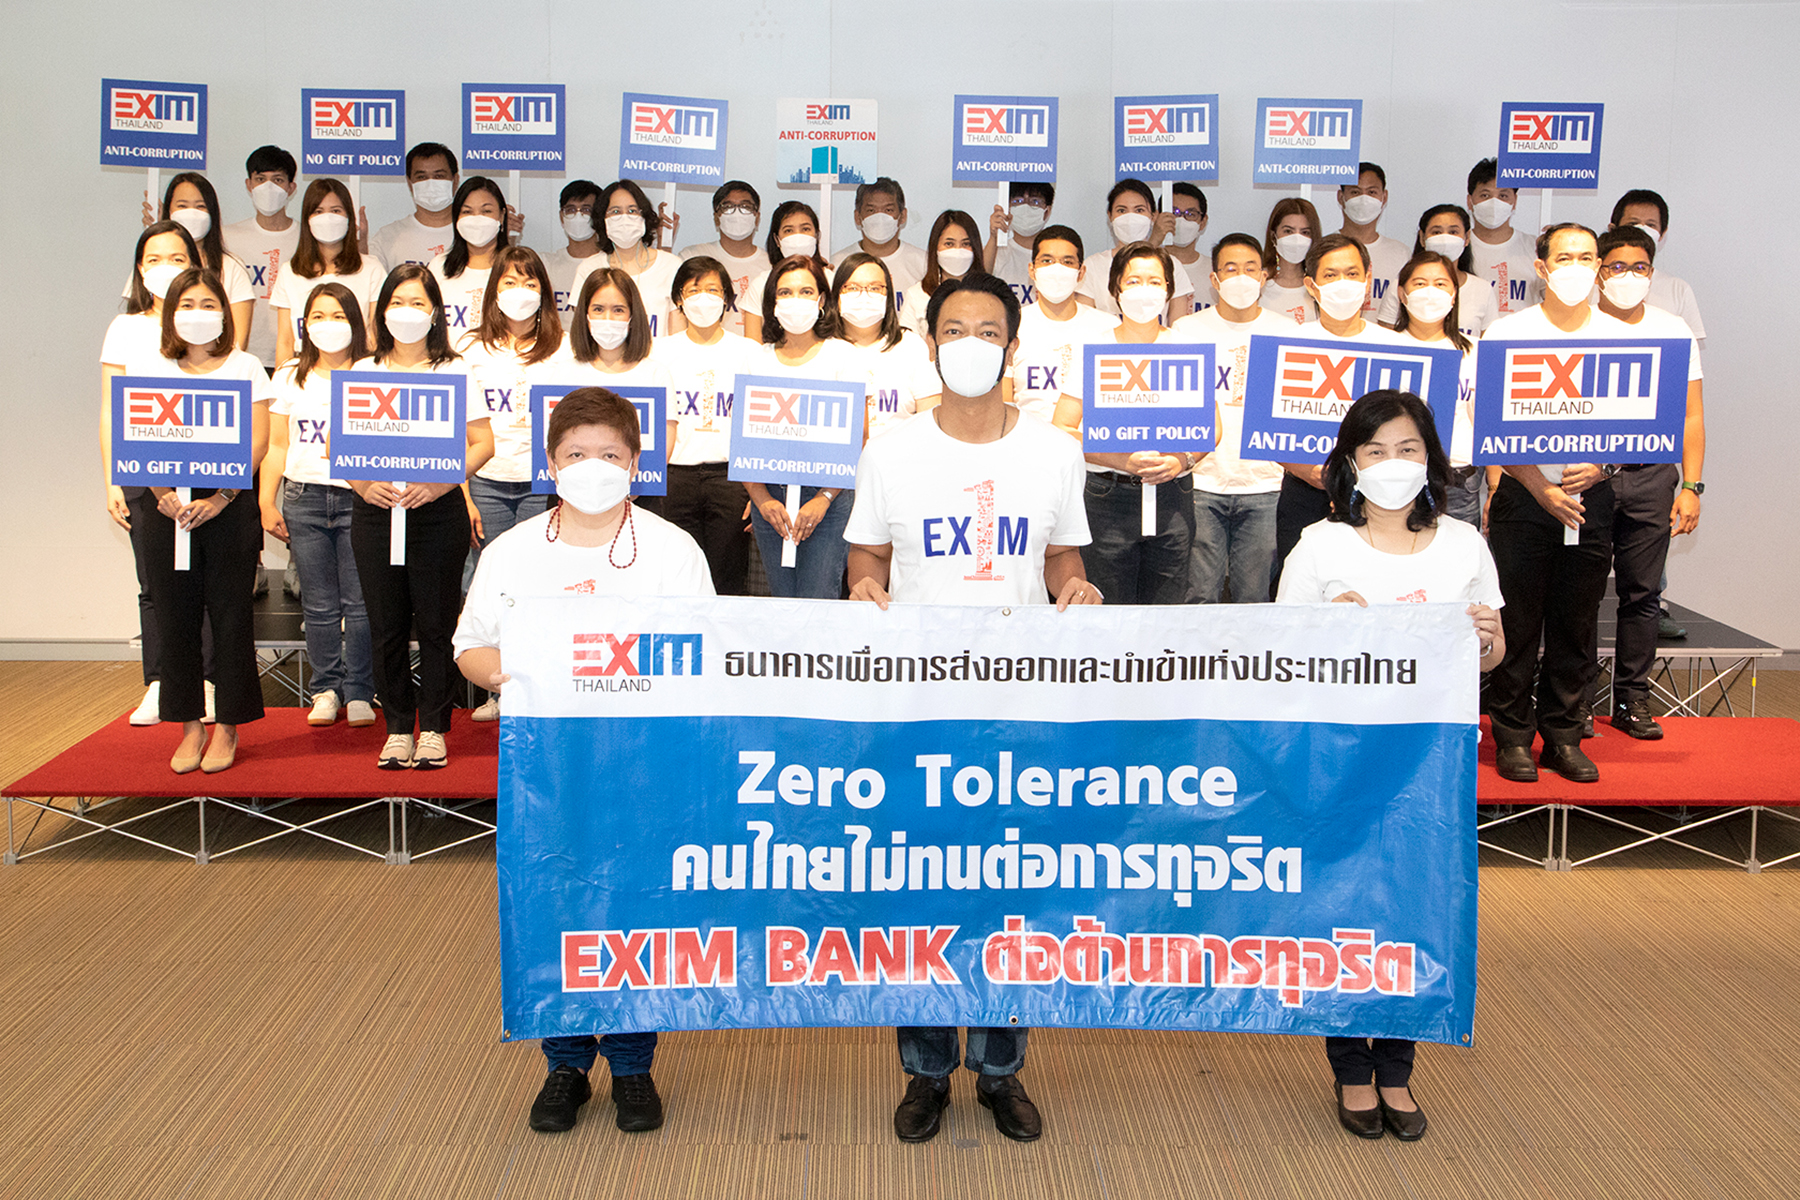 EXIM BANK ร่วมสนับสนุนและแสดงจุดยืนเป็นองค์กรต่อต้านคอร์รัปชัน “ไม่ทำ ไม่ทน ไม่เฉย รวมไทยต้านโกง”